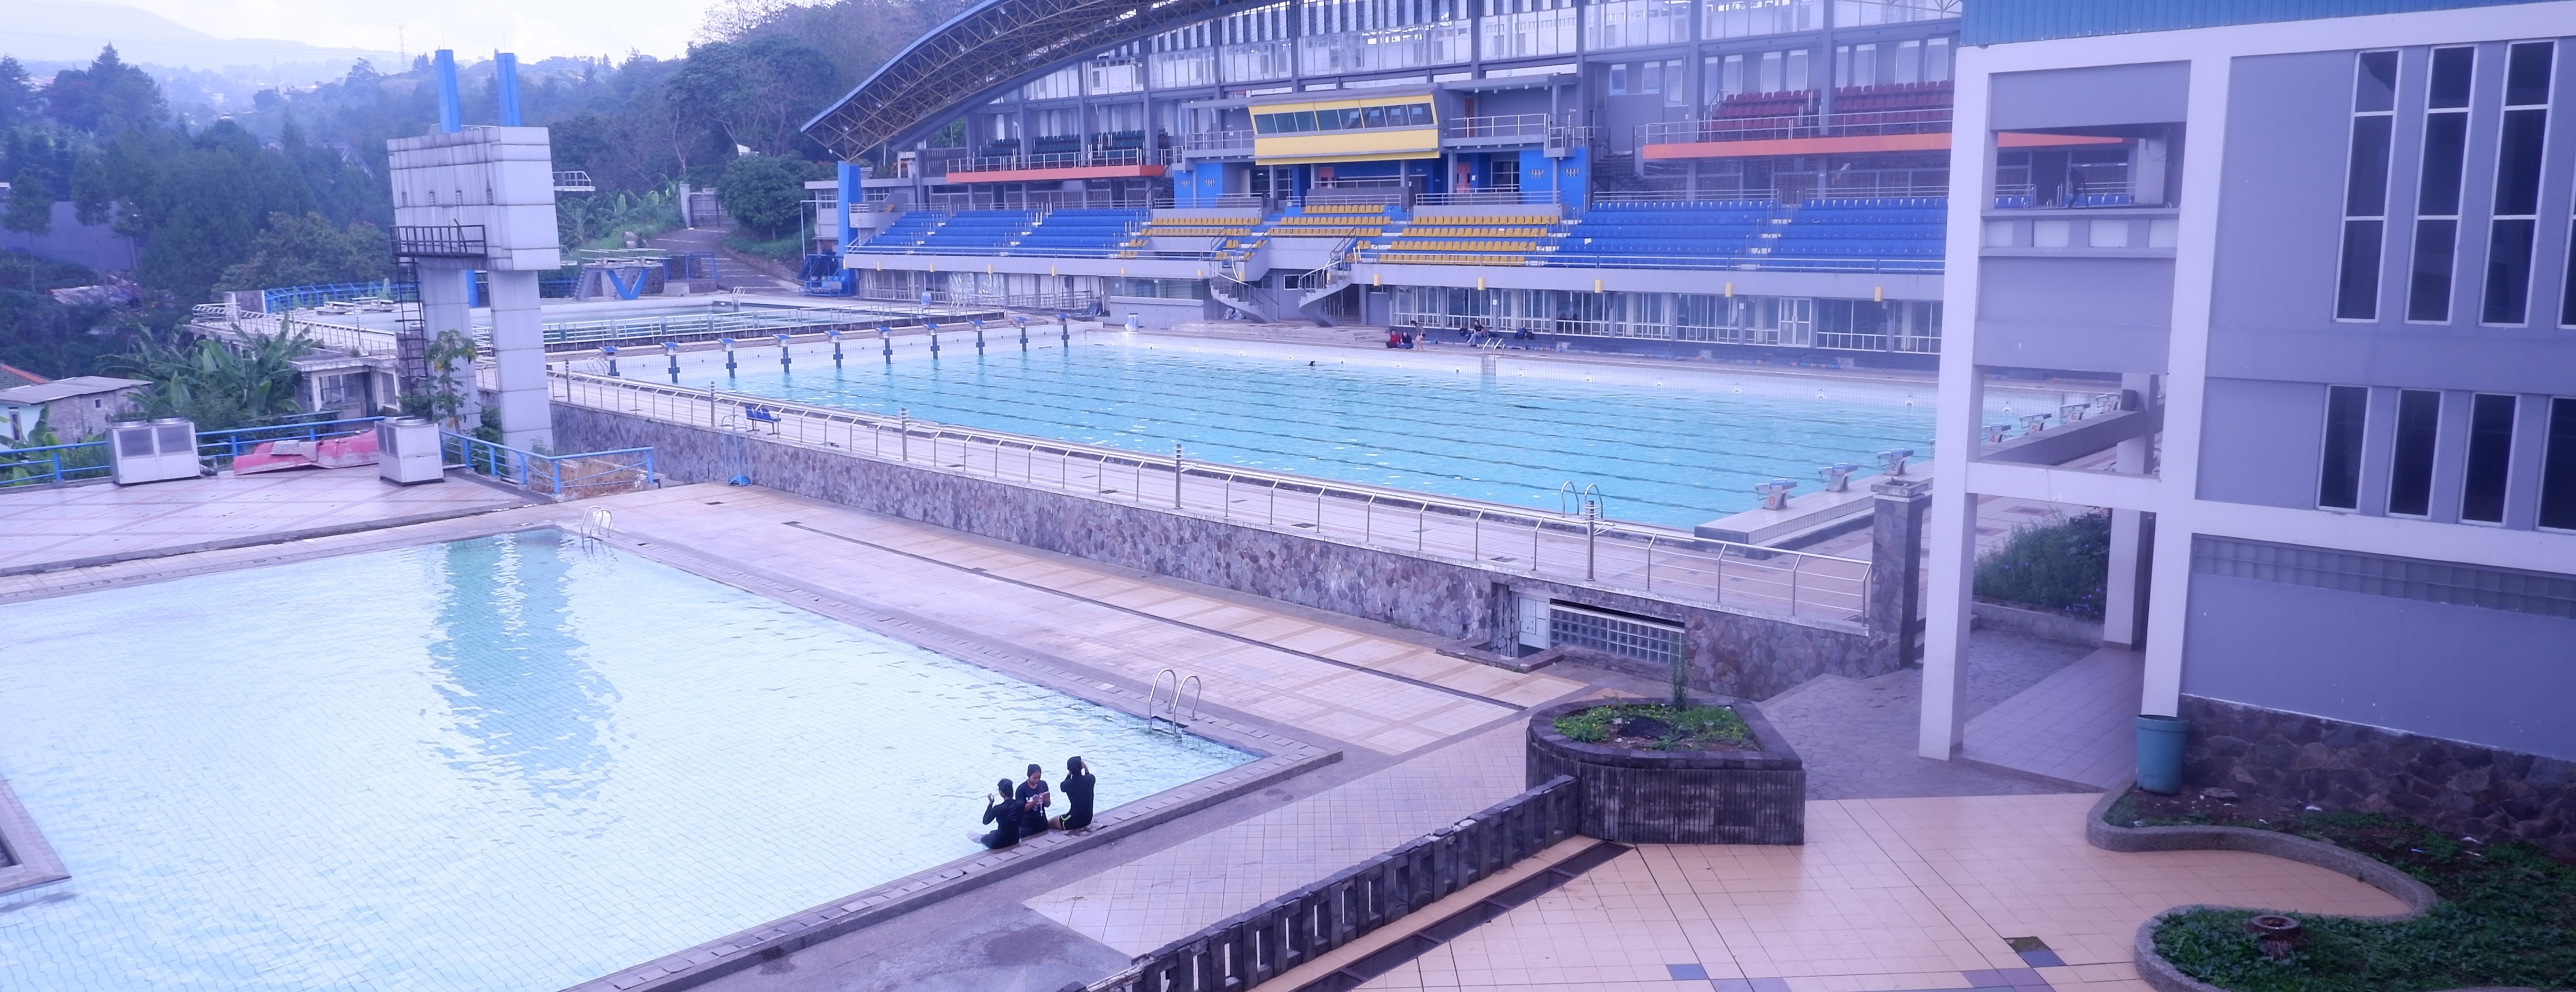 Kolam Renang Prestasi UPT Pusat Olahraga Universitas Pendidikan Indonesia kembali Sehat, Bersih dan Normal